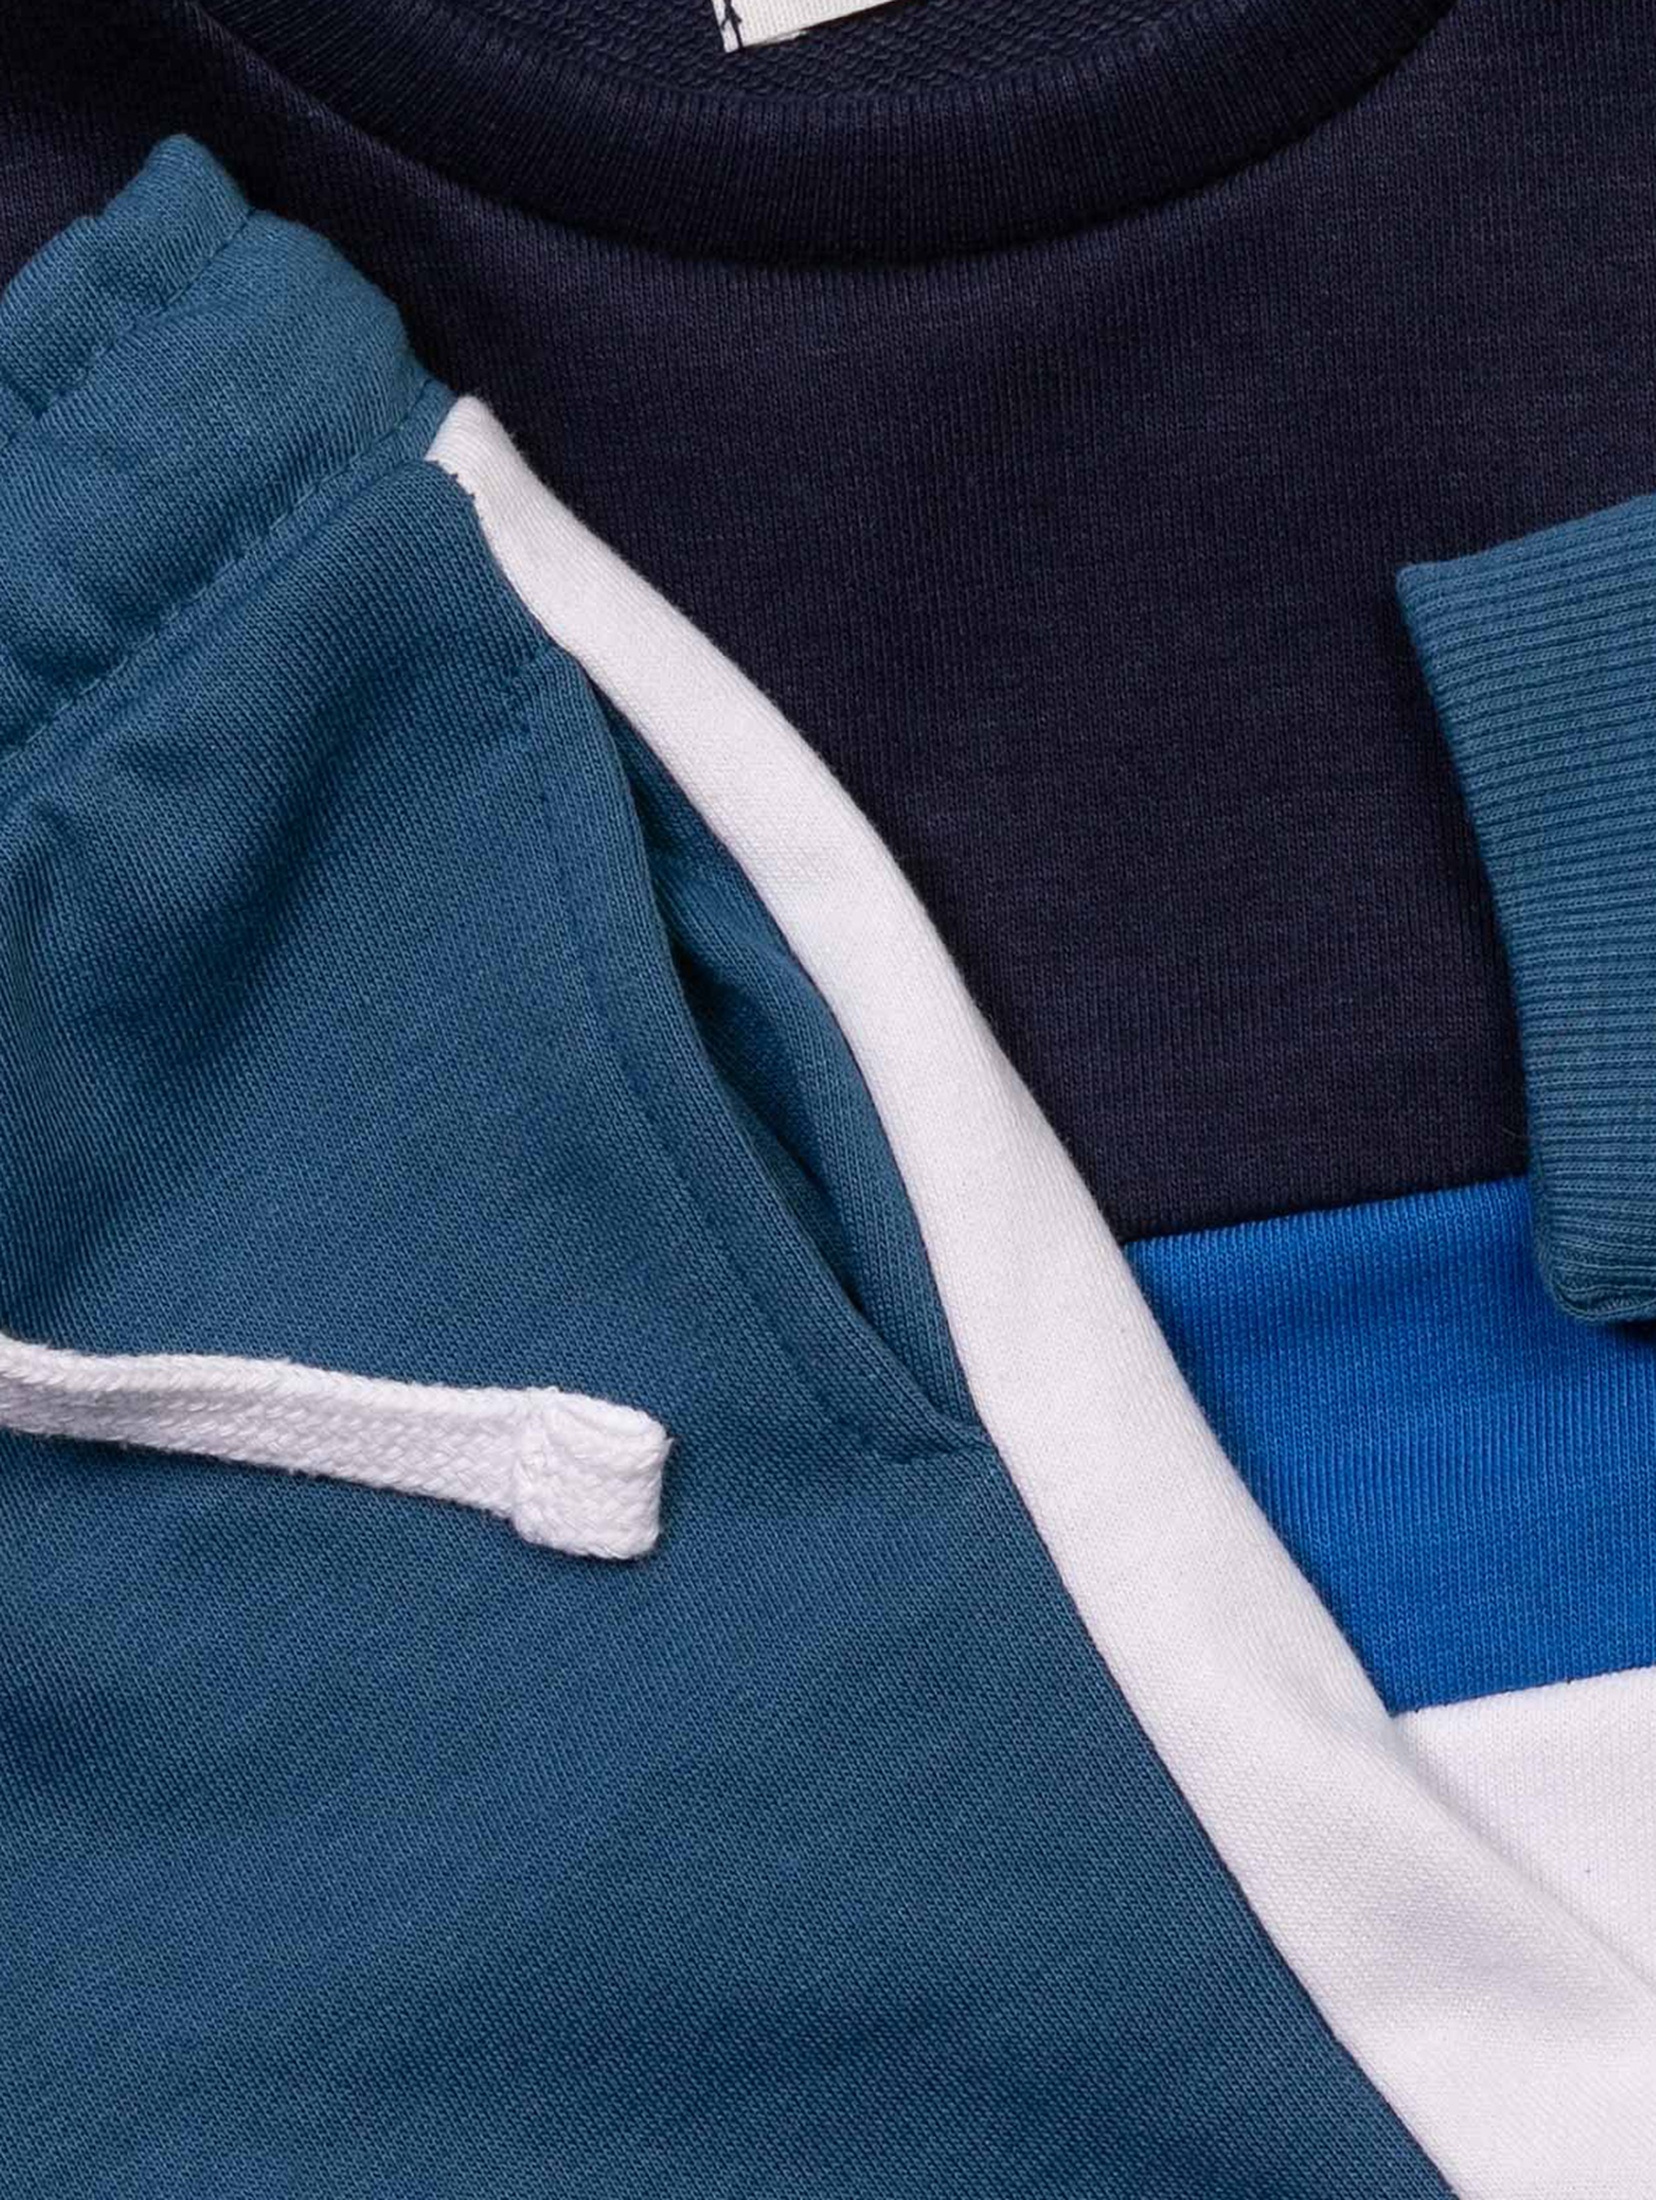 Granatowy komplet dla chłopca w paski- bluza polarowa + szorty